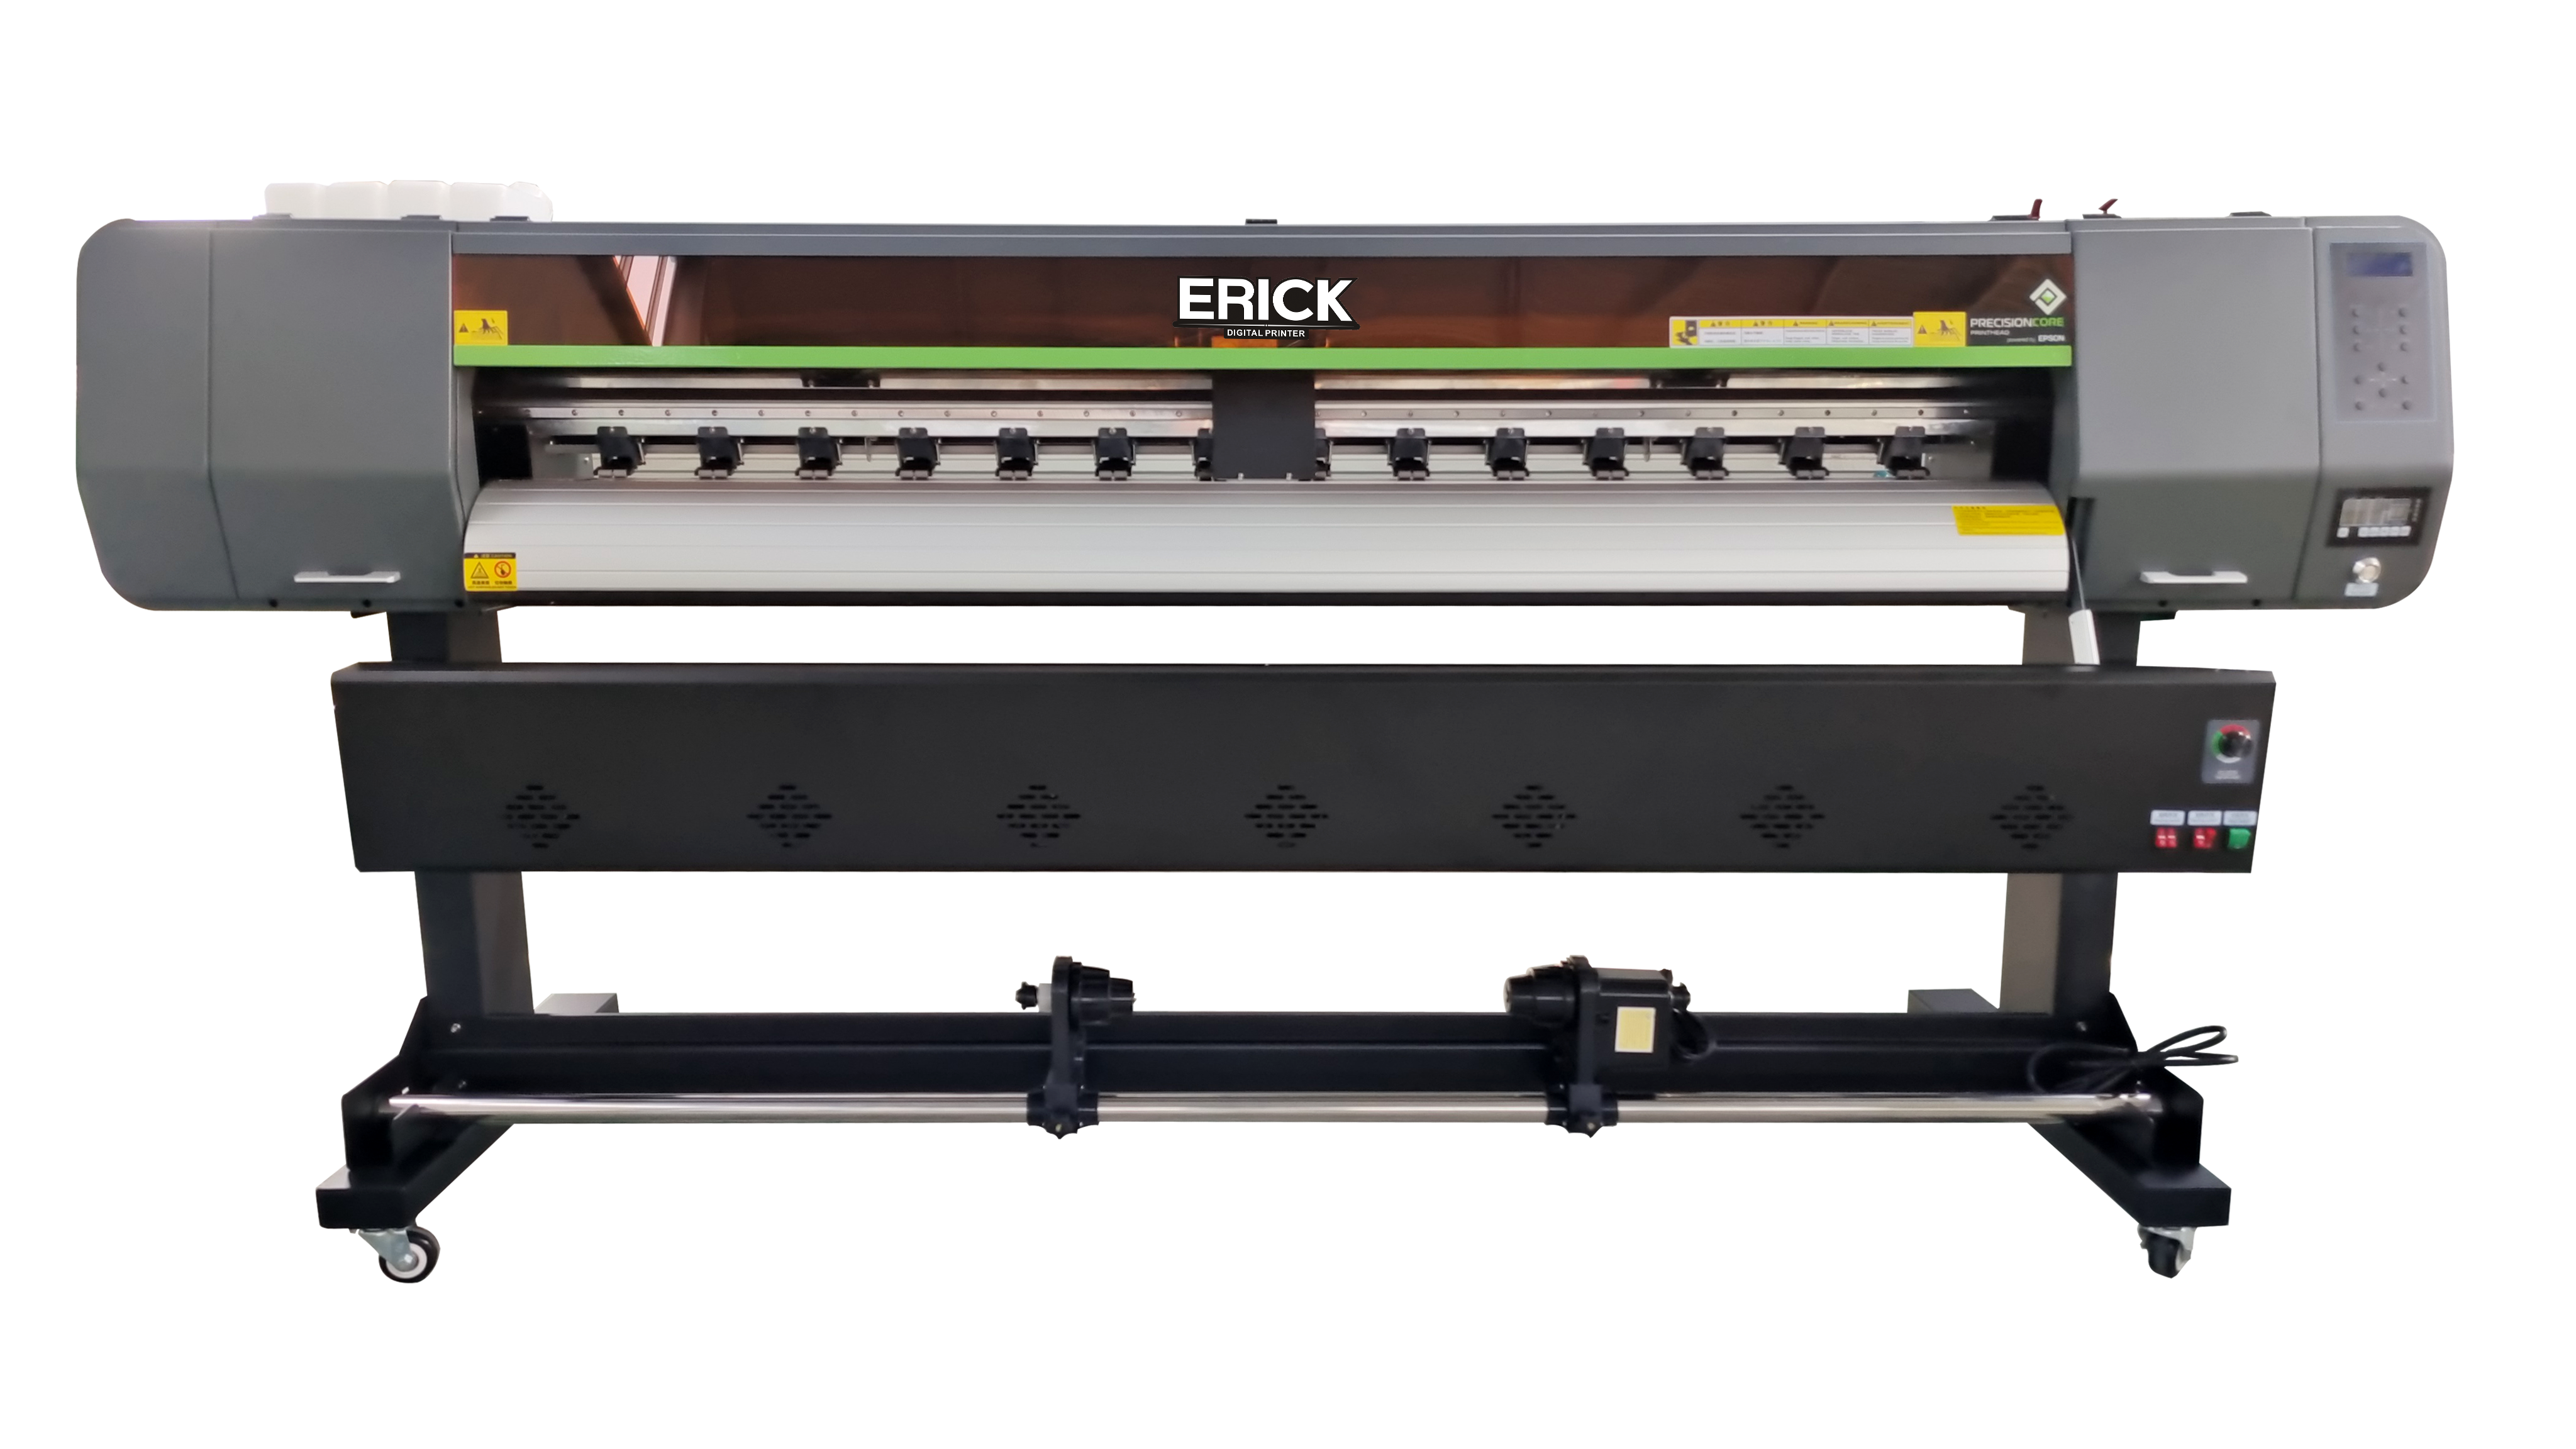 Erick 1801 med 1 stk EP-I3200-A1/E1 printhoveder